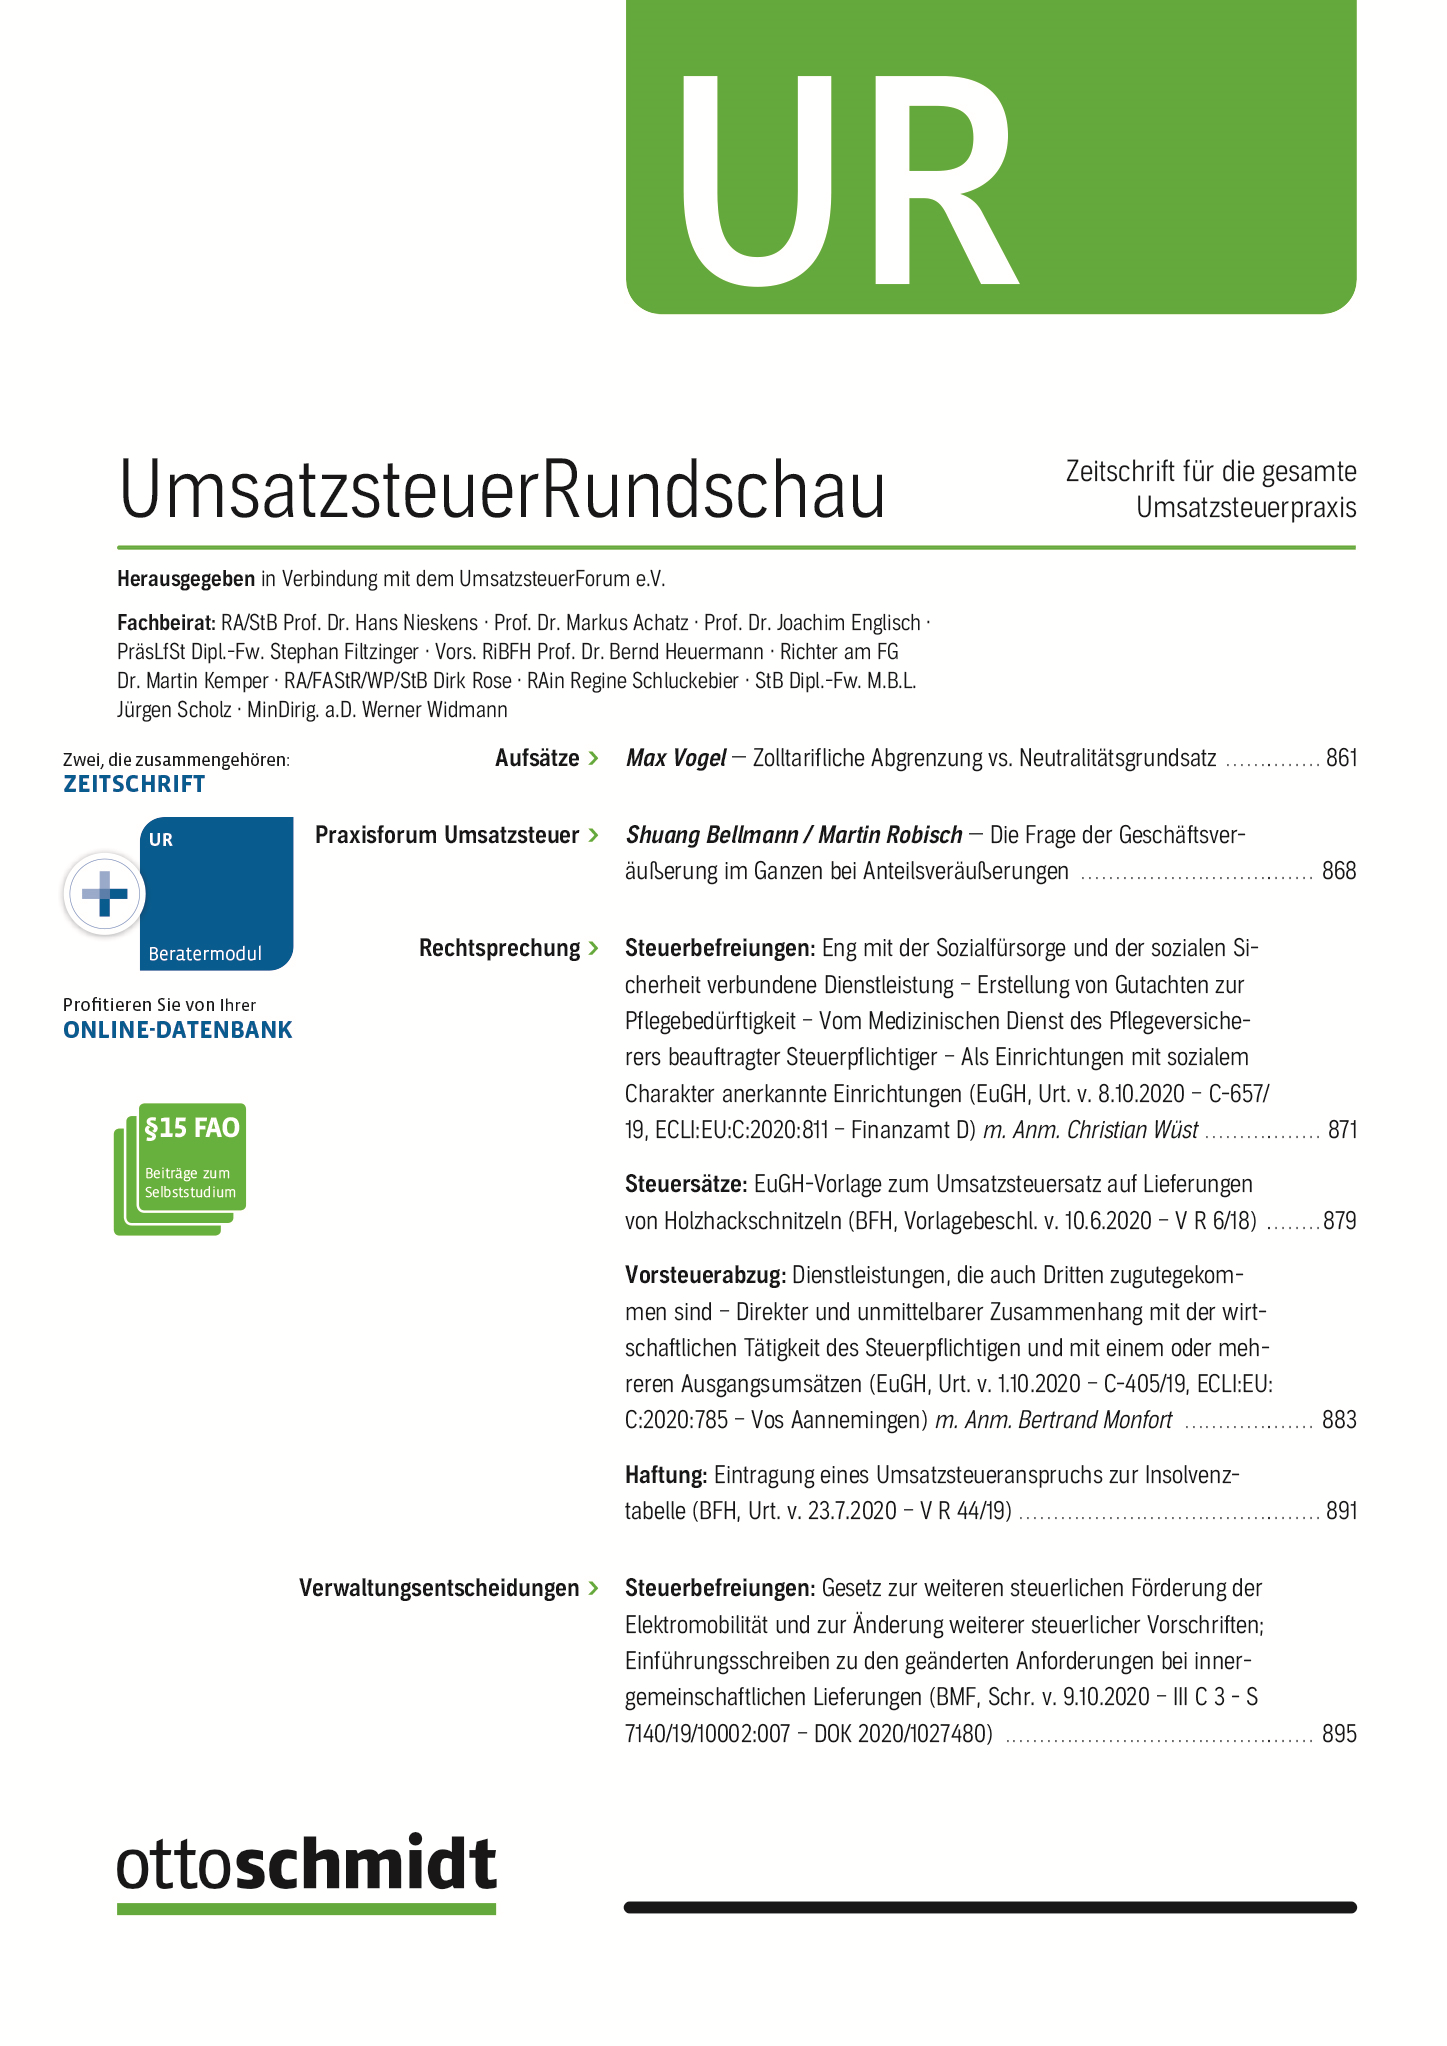 Abbildung: Umsatzsteuer-Rundschau (UR)